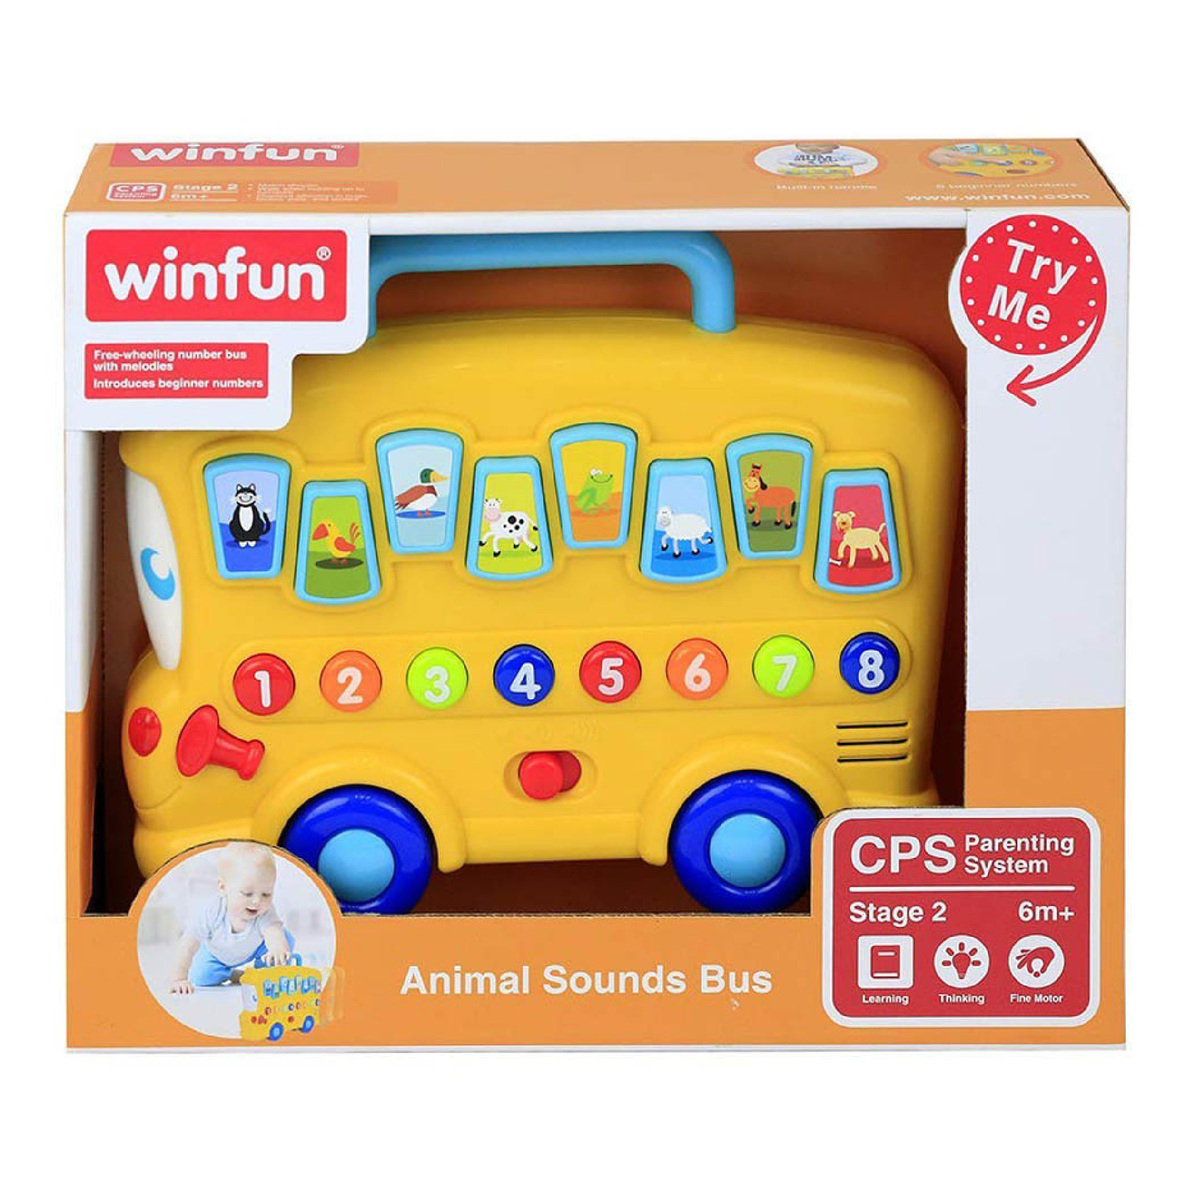 Winfun Animal Sounds Bus 676-01